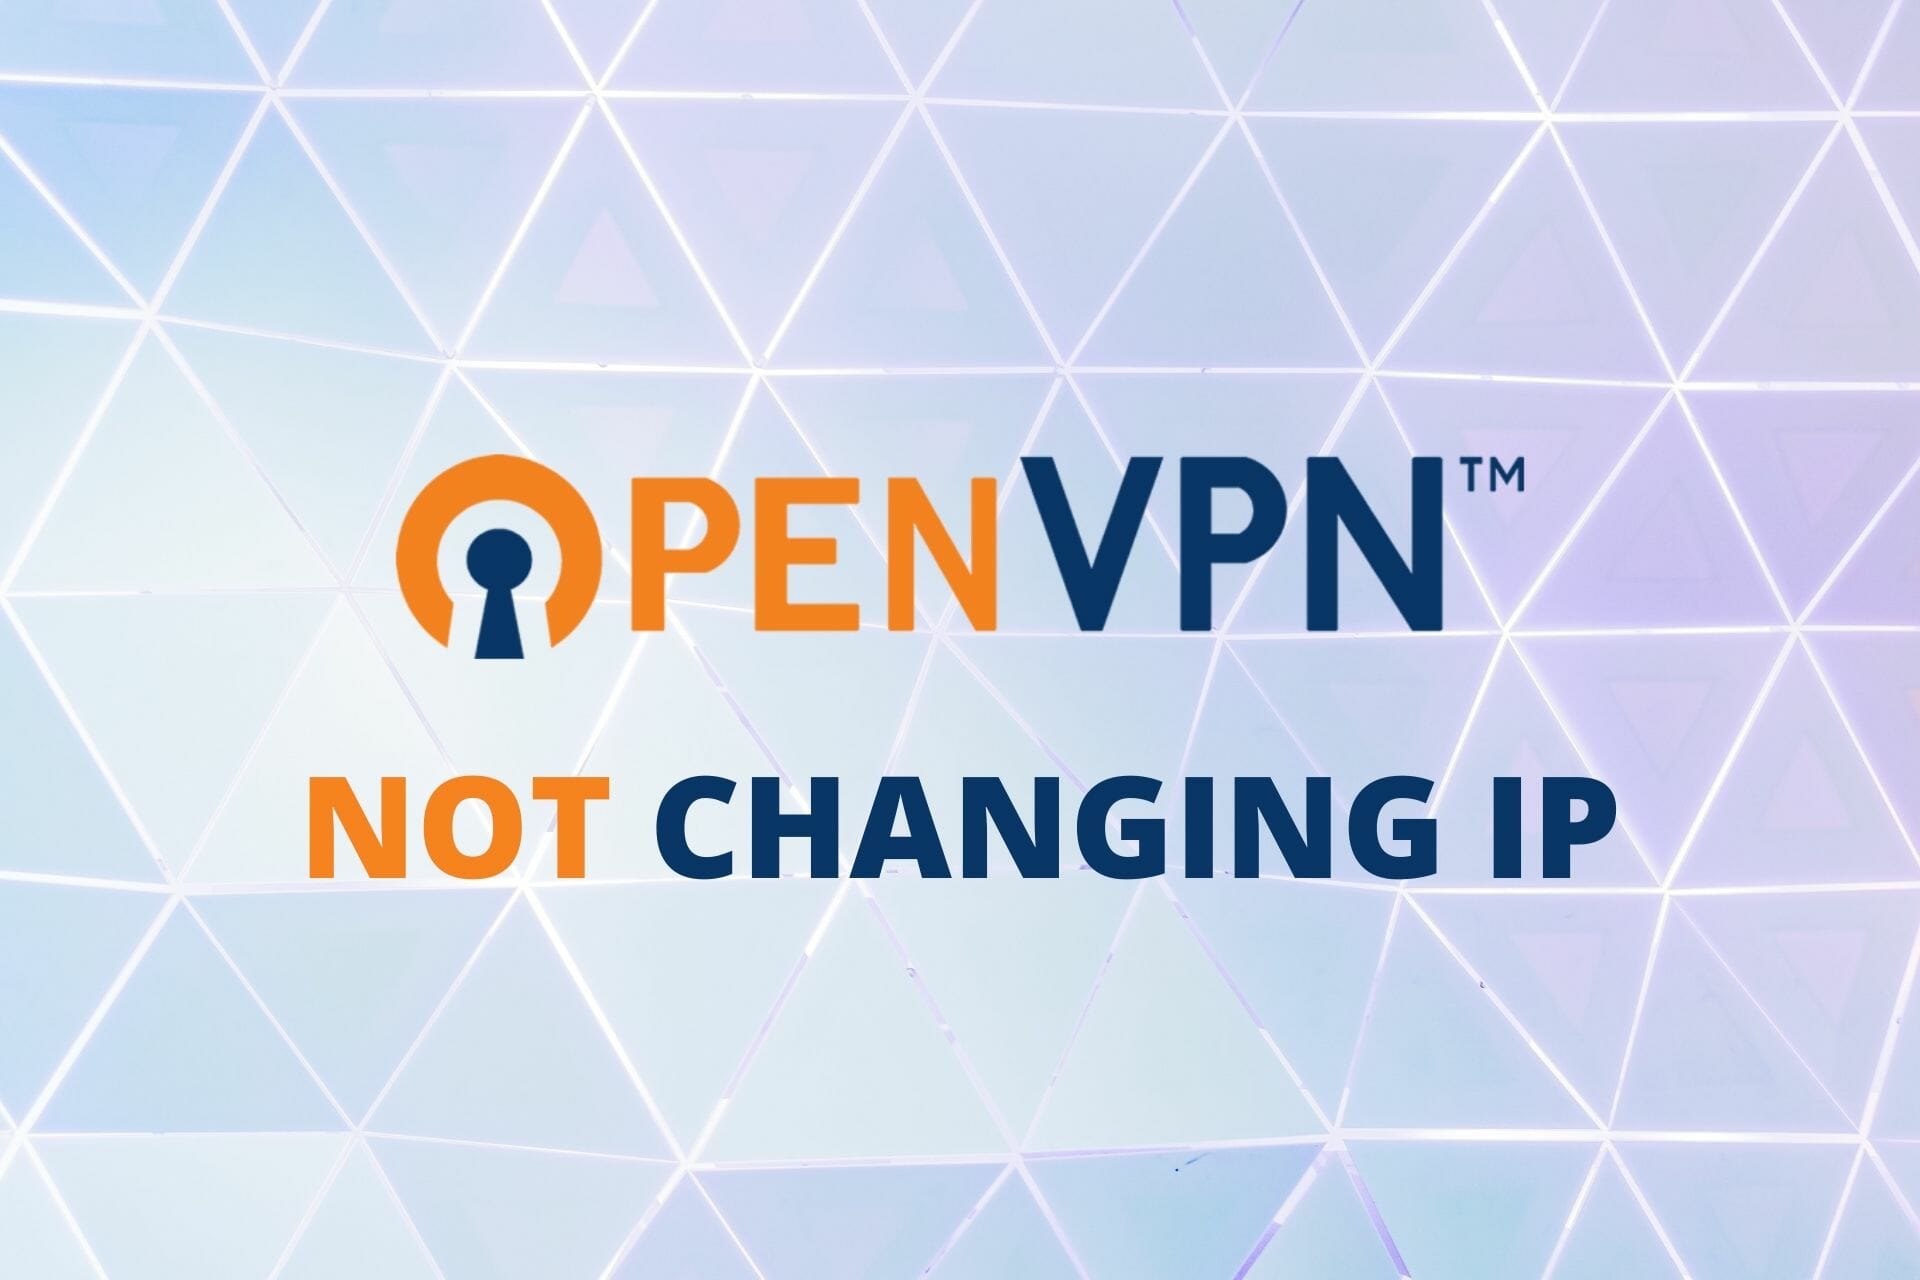 OpenVPN not changing IP